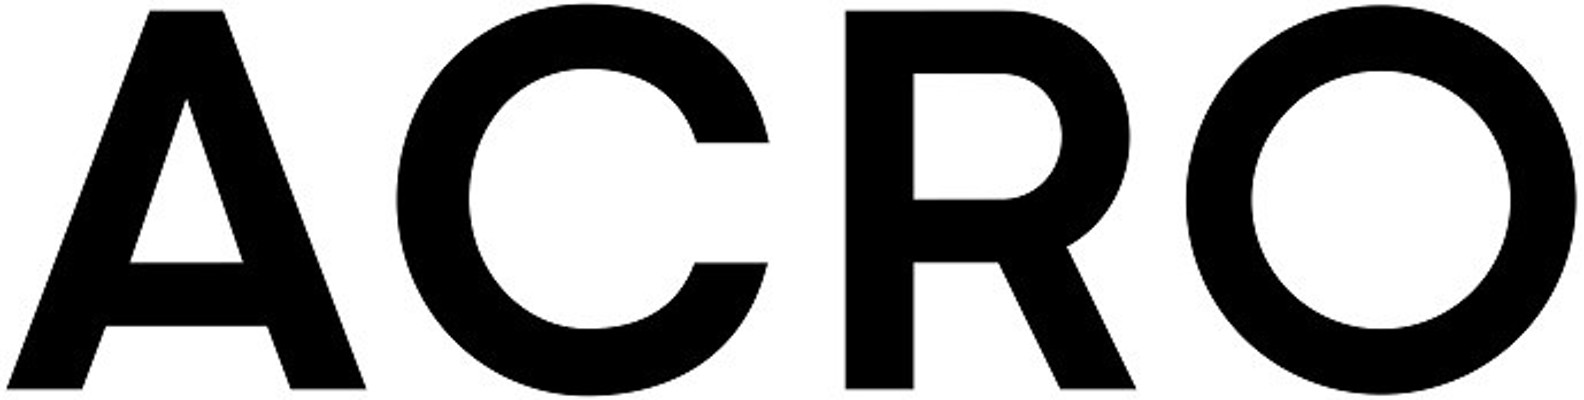 대림산업, 아크로(ACRO) 브랜드 리뉴얼…21일 아크로 갤러리 공개 | 포토뉴스